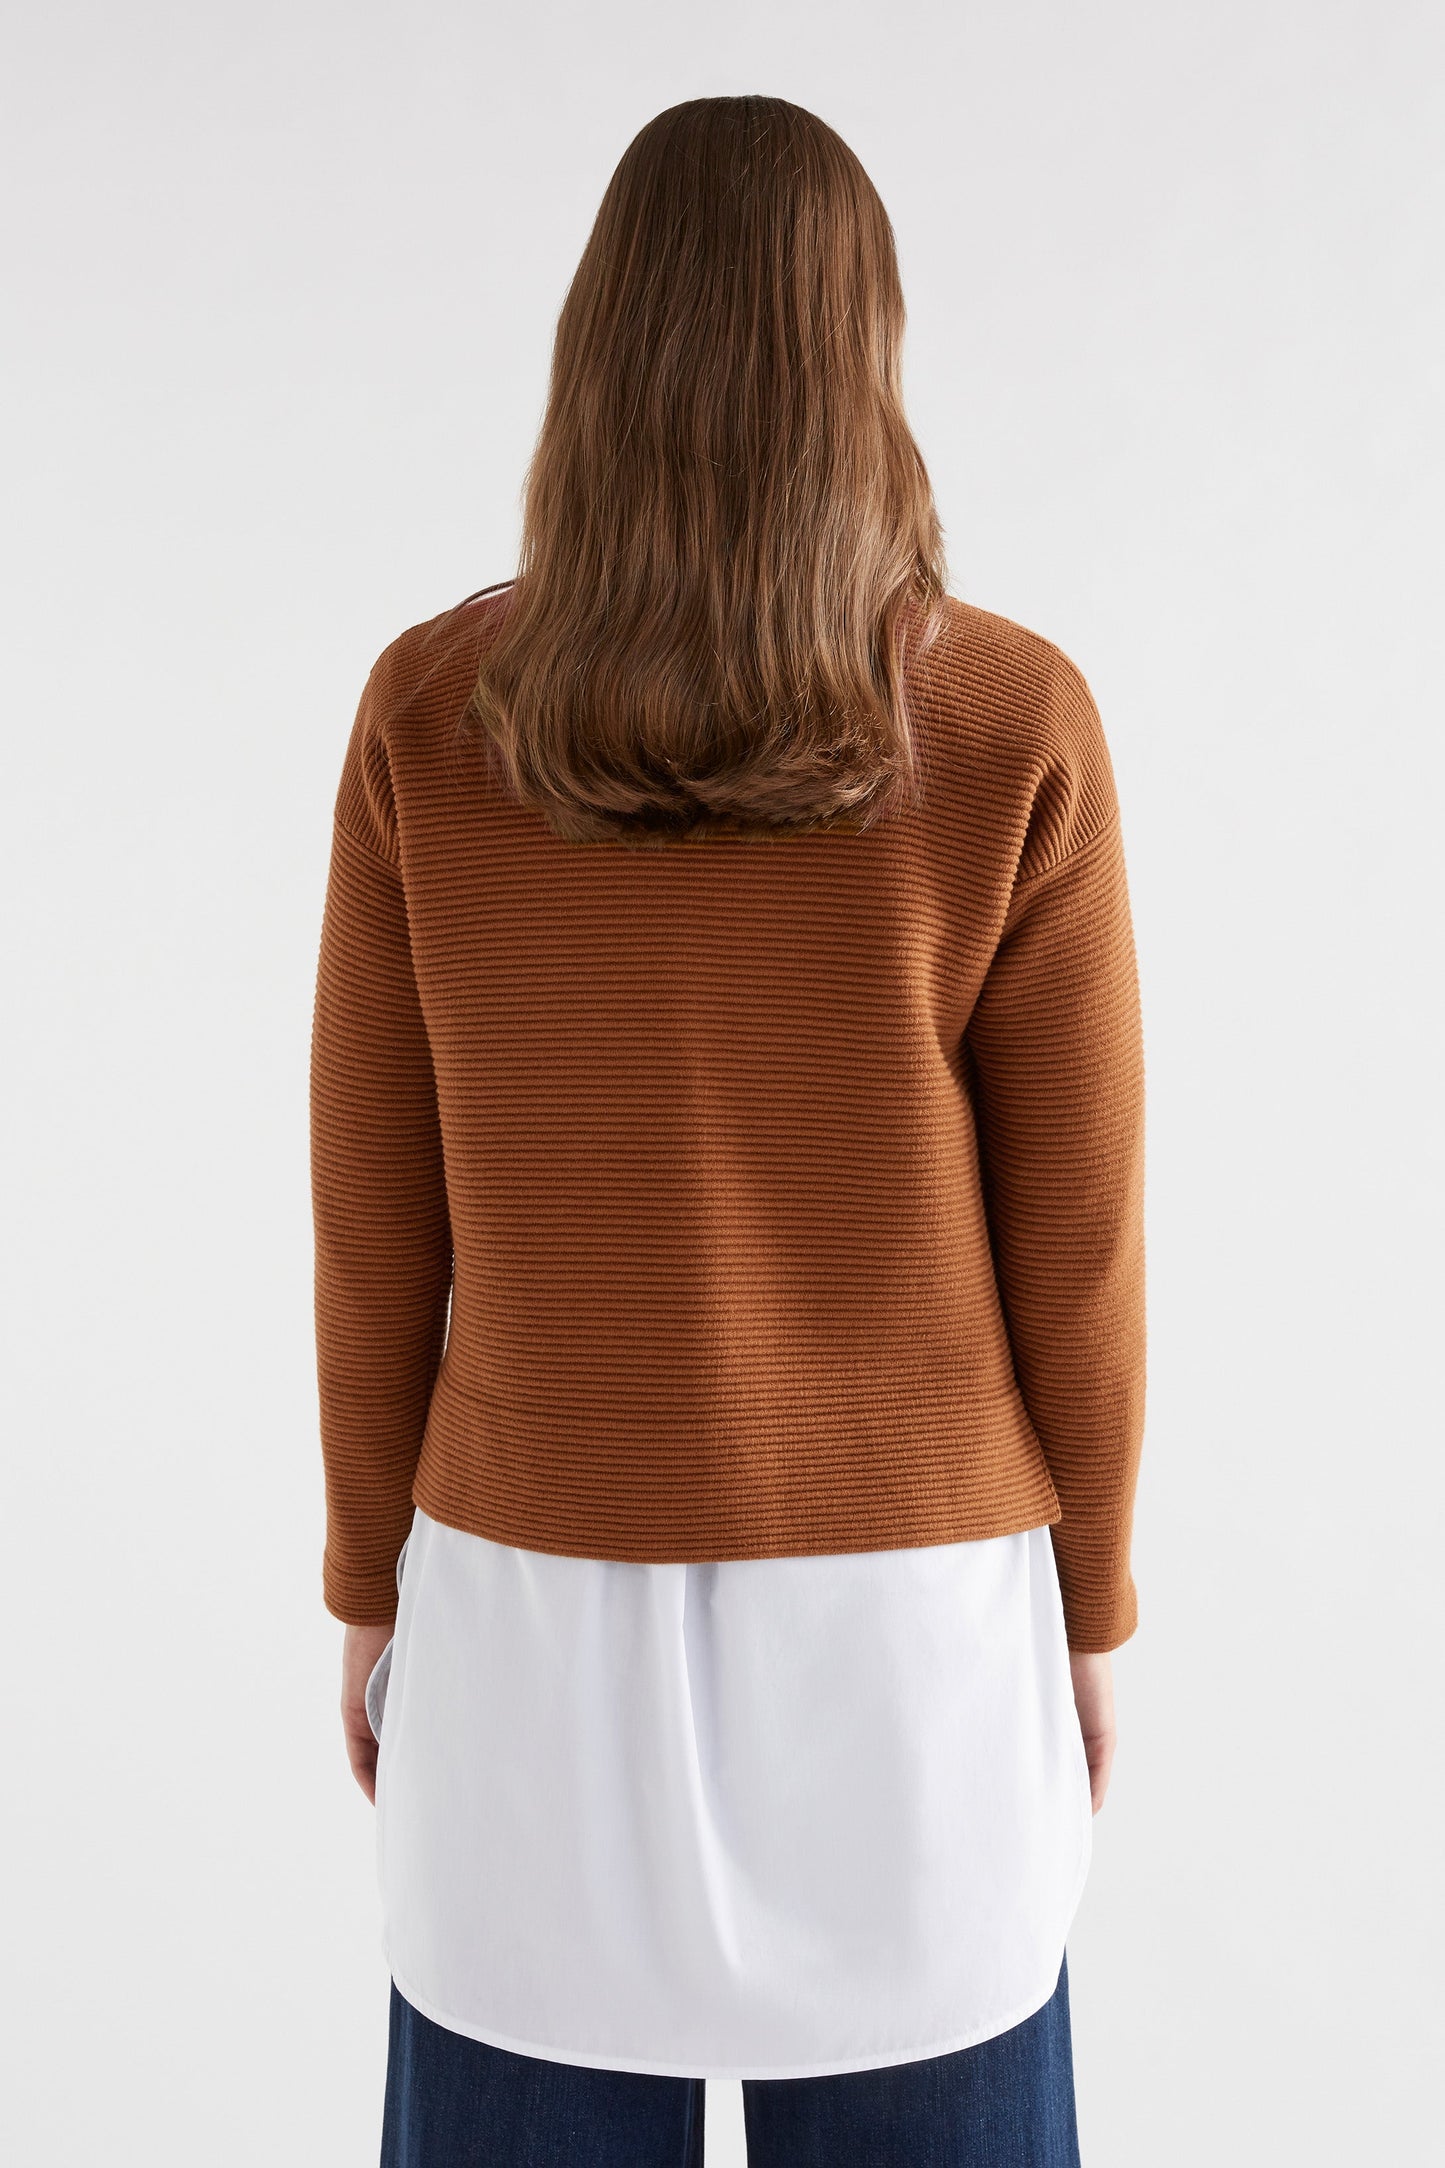 Neiu Cotton Merino Round Neck Ottoman Sweater Model back | COPPER